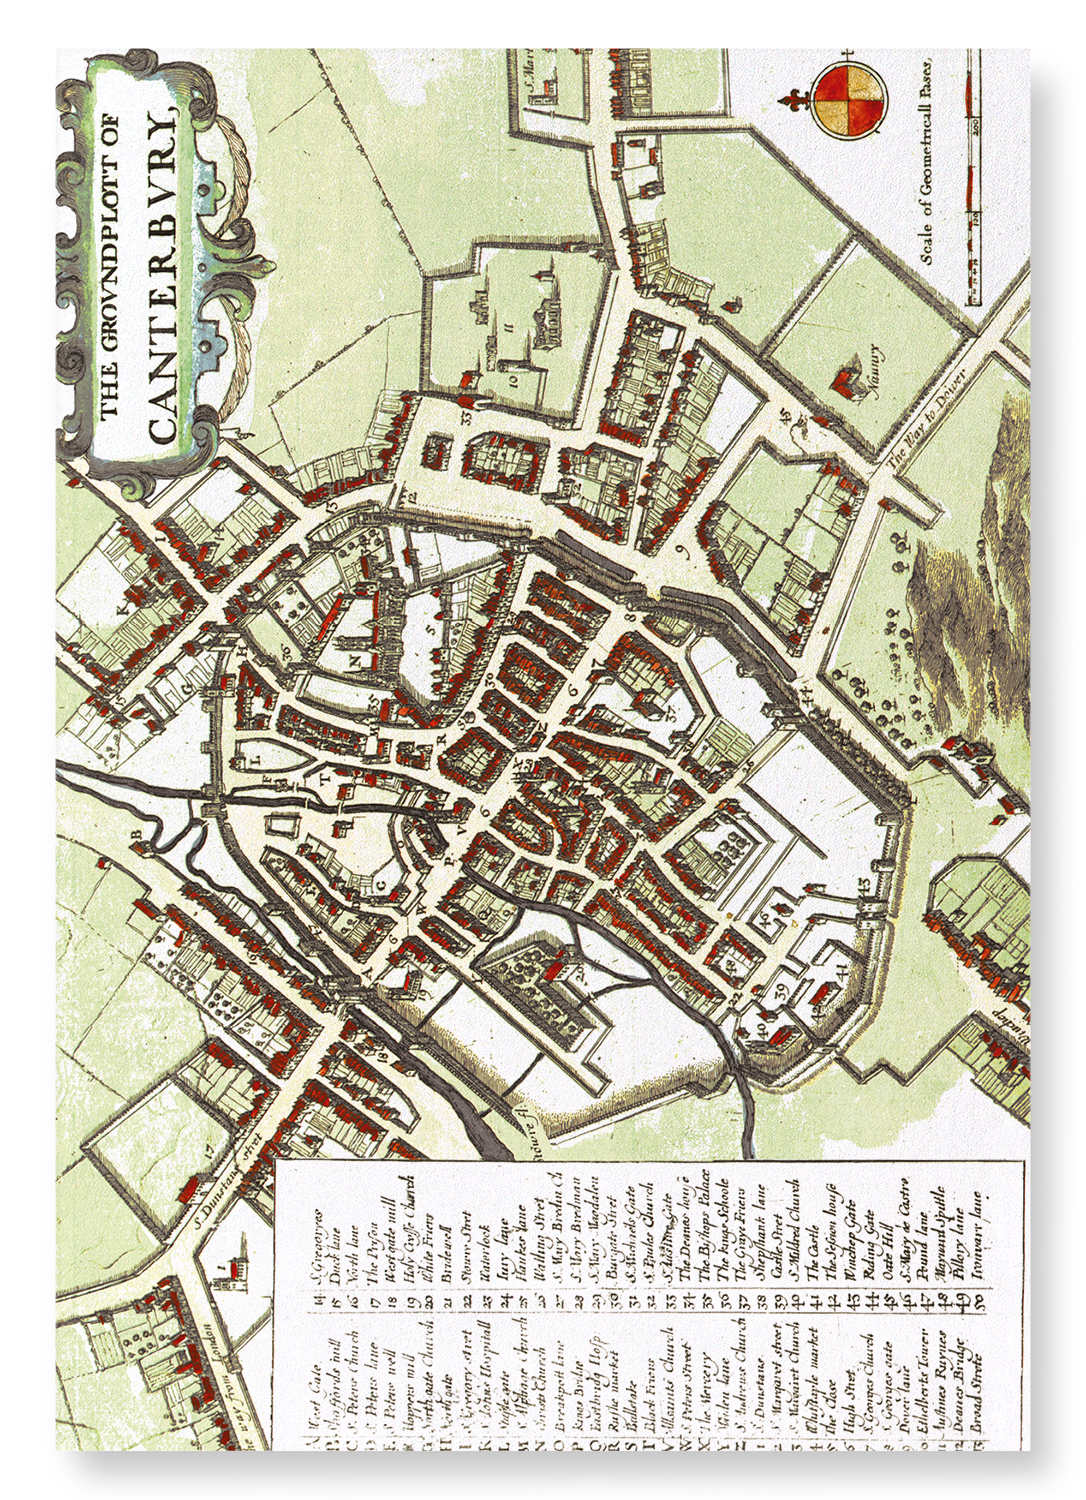 CANTERBURY (C.1670)